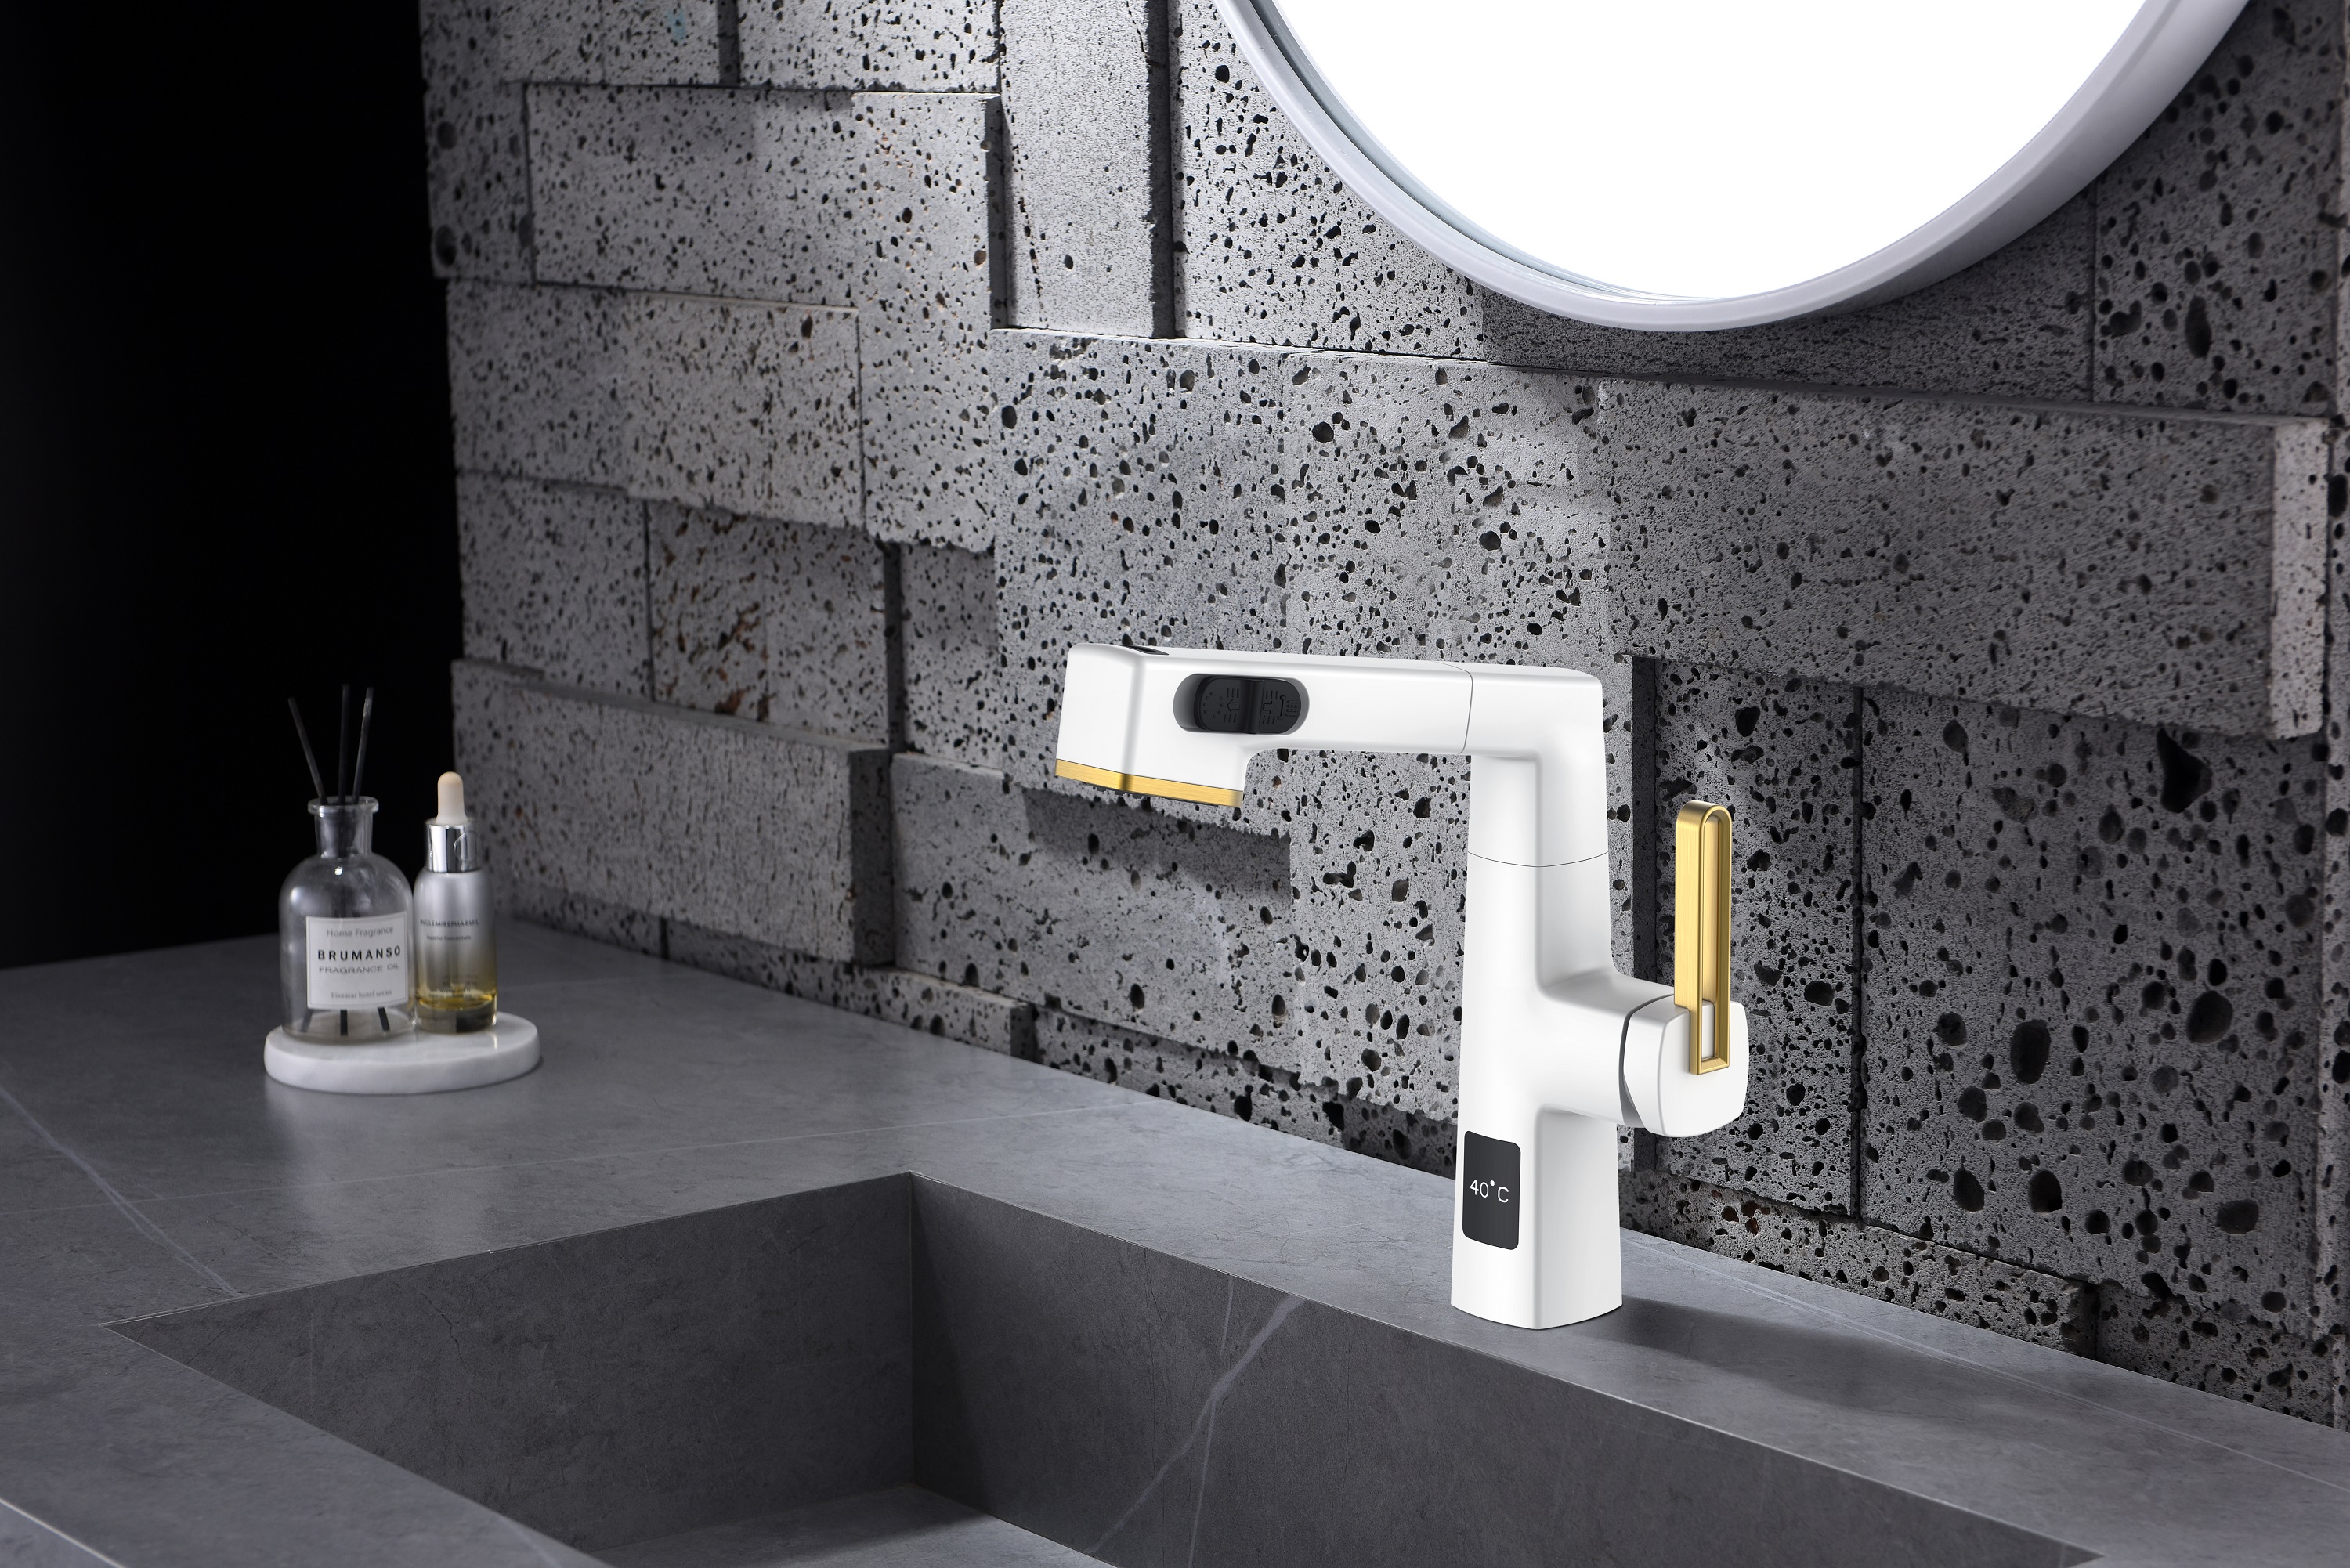  Visor de temperatura com design exclusivo, branco fosco, torneira de banheiro retrátil com altura ajustável